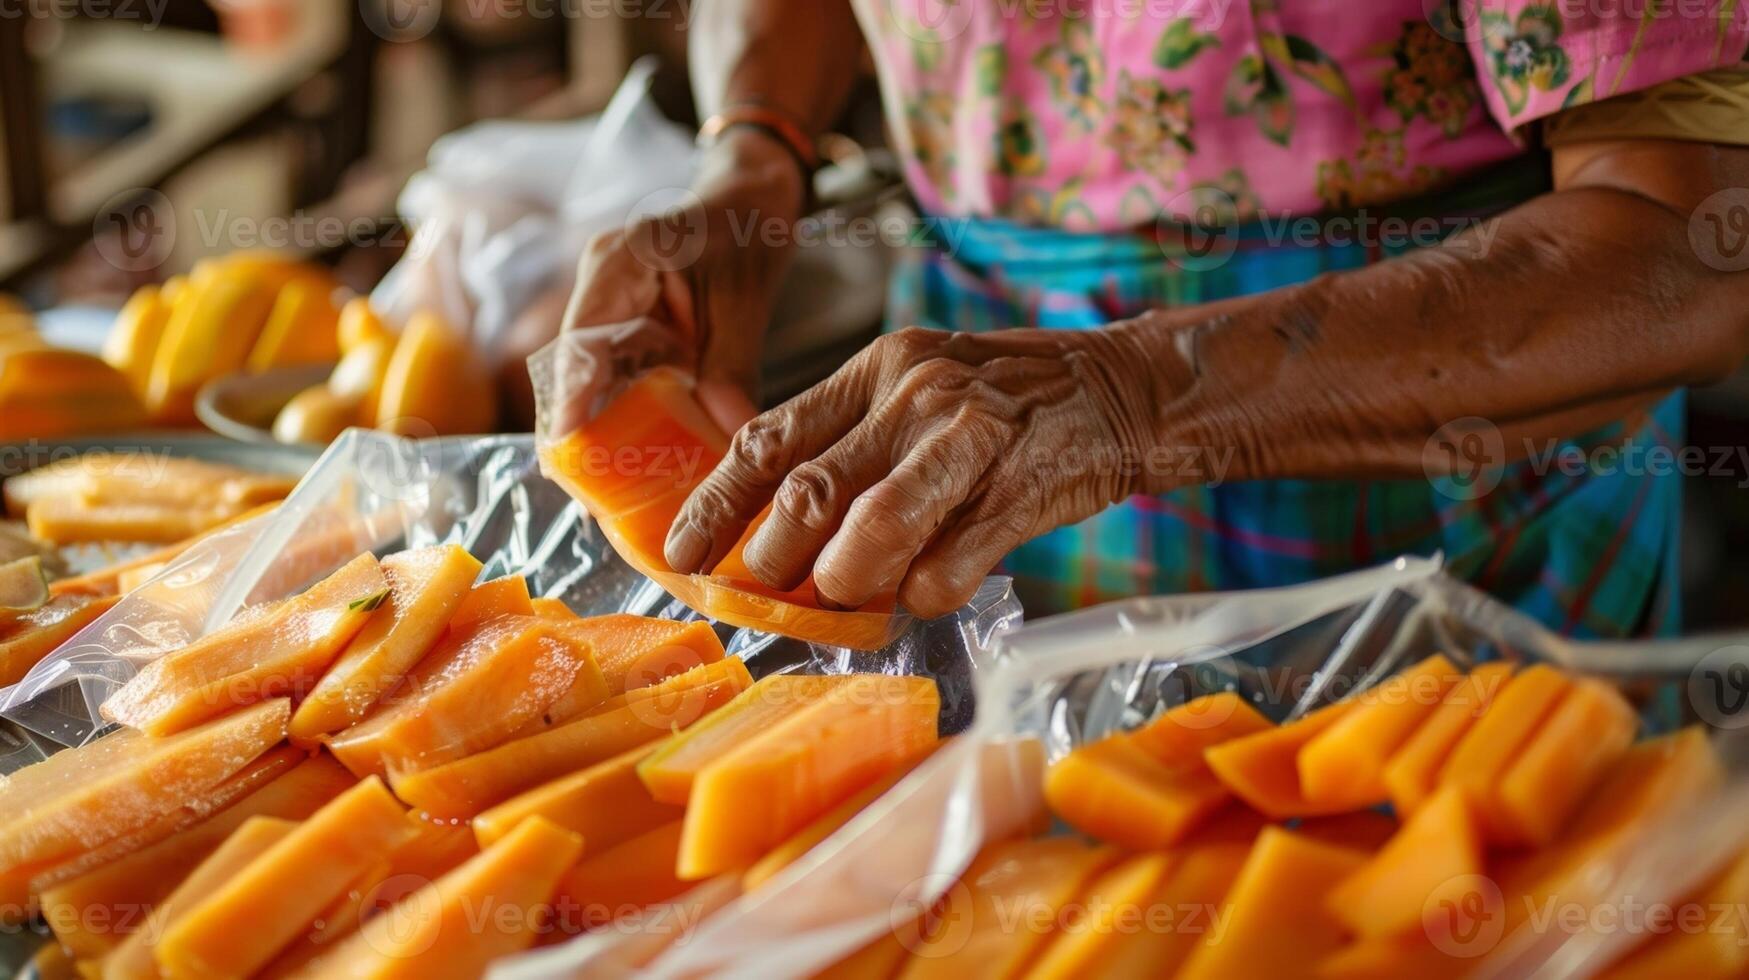 een vrouw voorzichtig inpakken gesneden papaja in luchtdicht plastic Tassen welke zullen worden bevroren en bewaard gebleven voor toekomst gebruik in smoothies of desserts foto